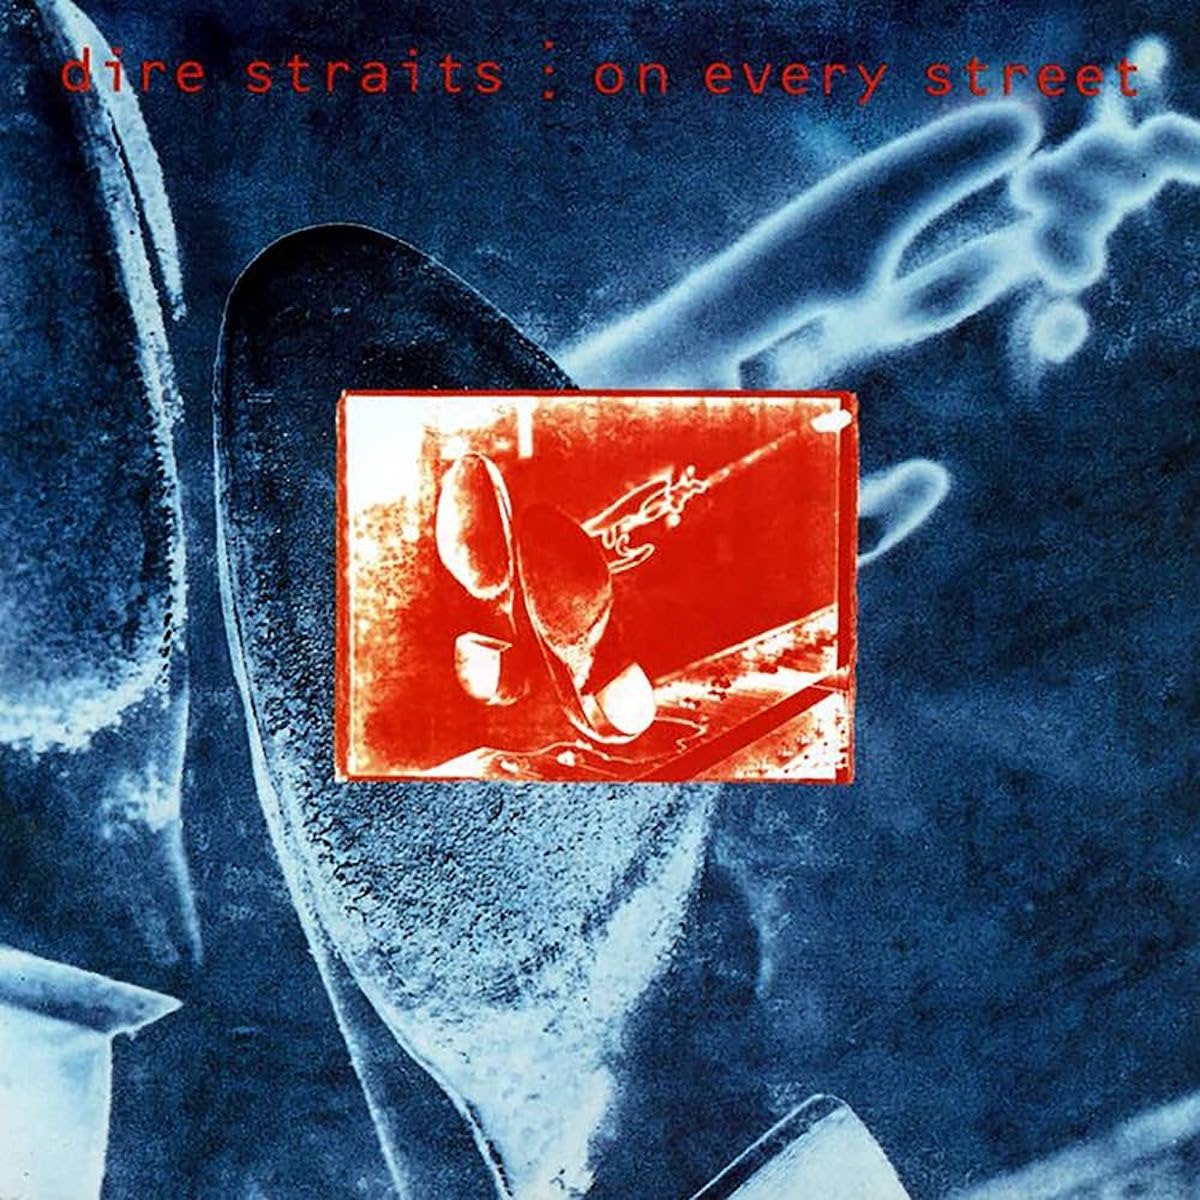 Tutti i dischi dei Dire Straits, dal peggiore al migliore